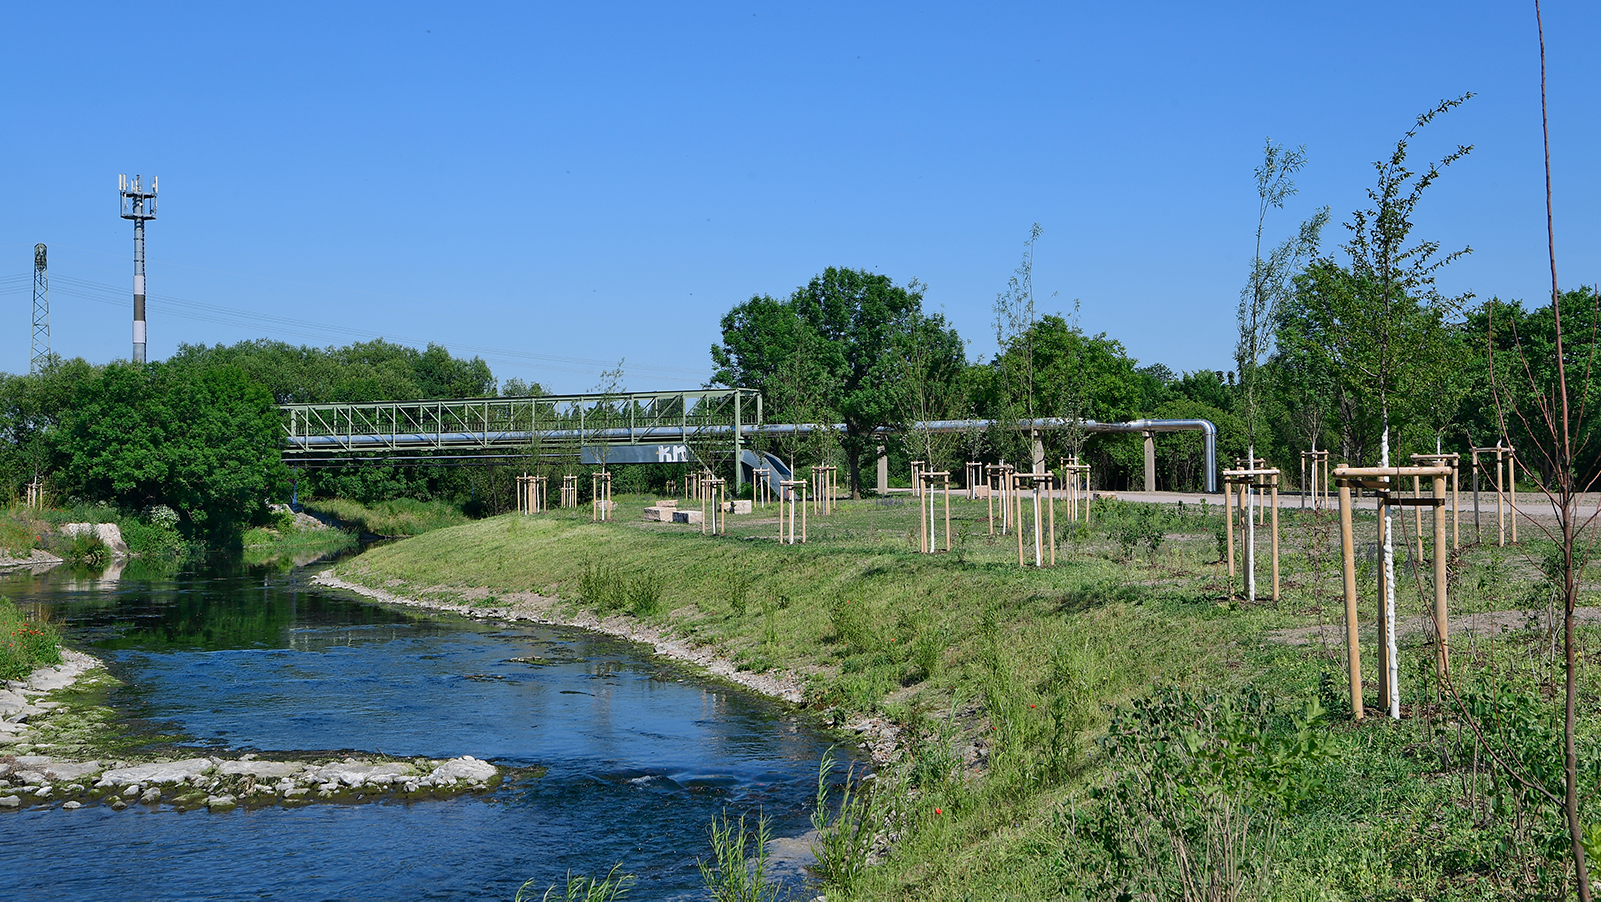 Brücke Gispersleben mit Park